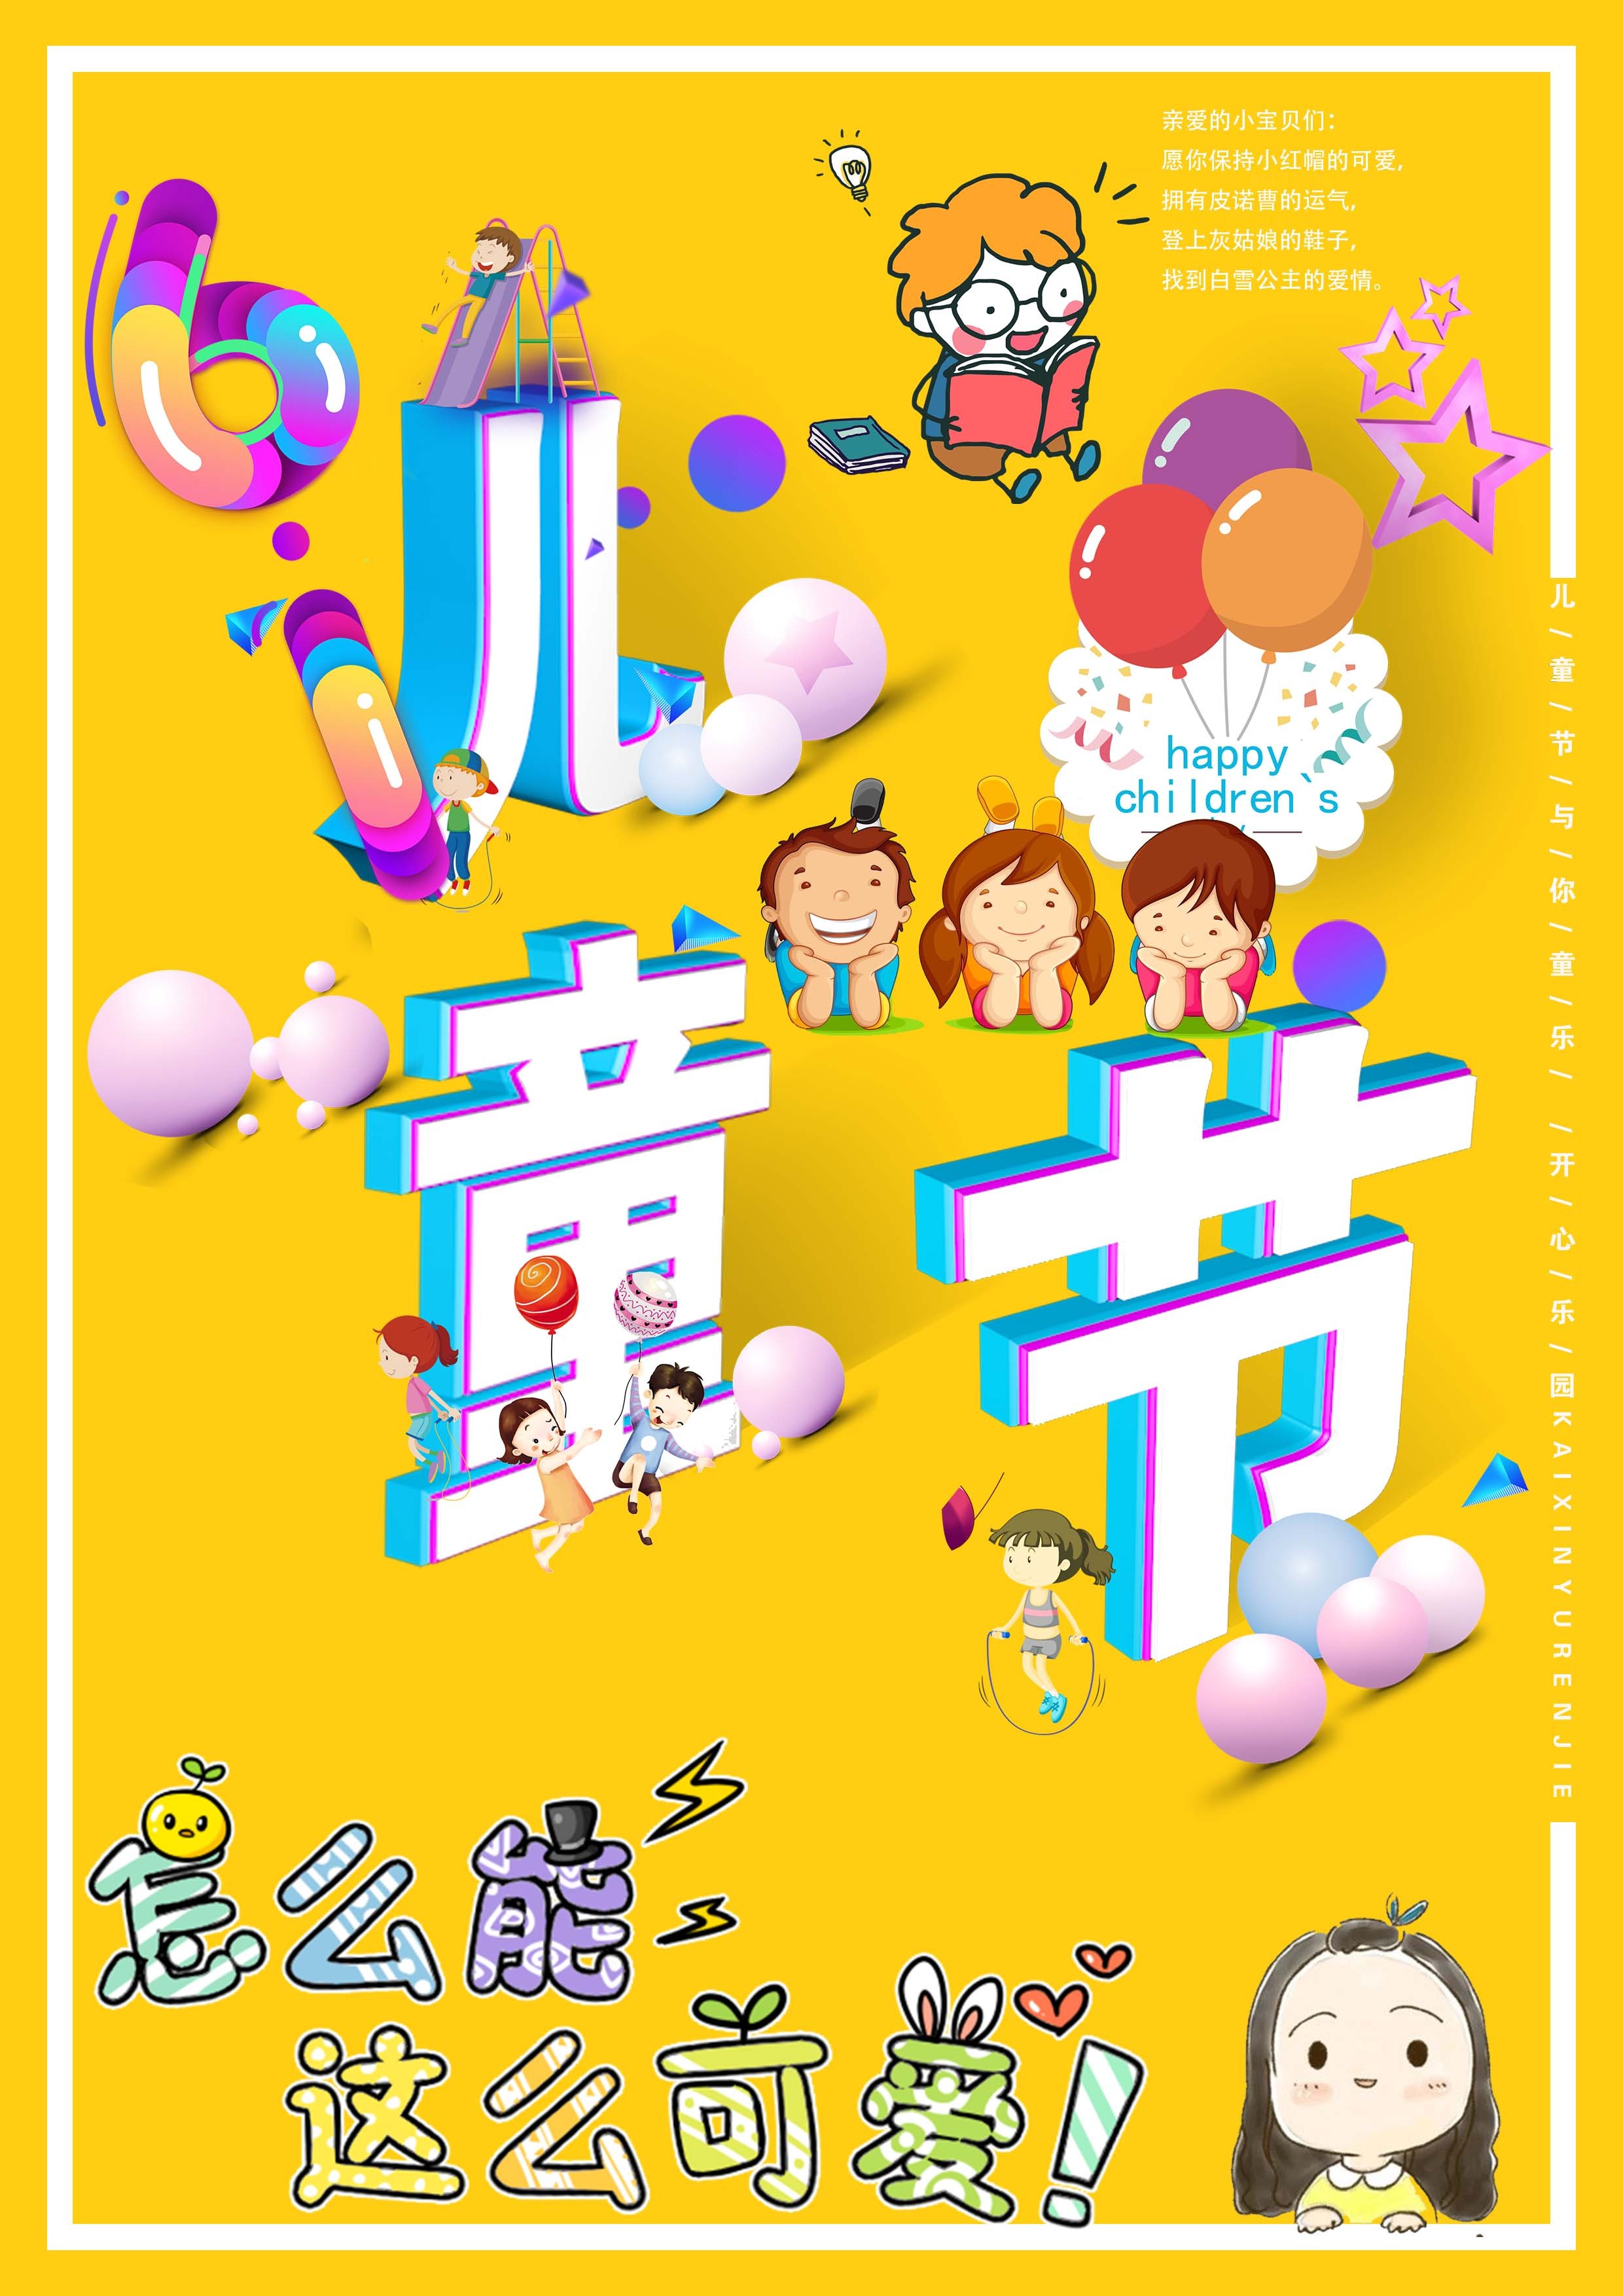 六一儿童节快乐教育祝福海报_图片模板素材-稿定设计